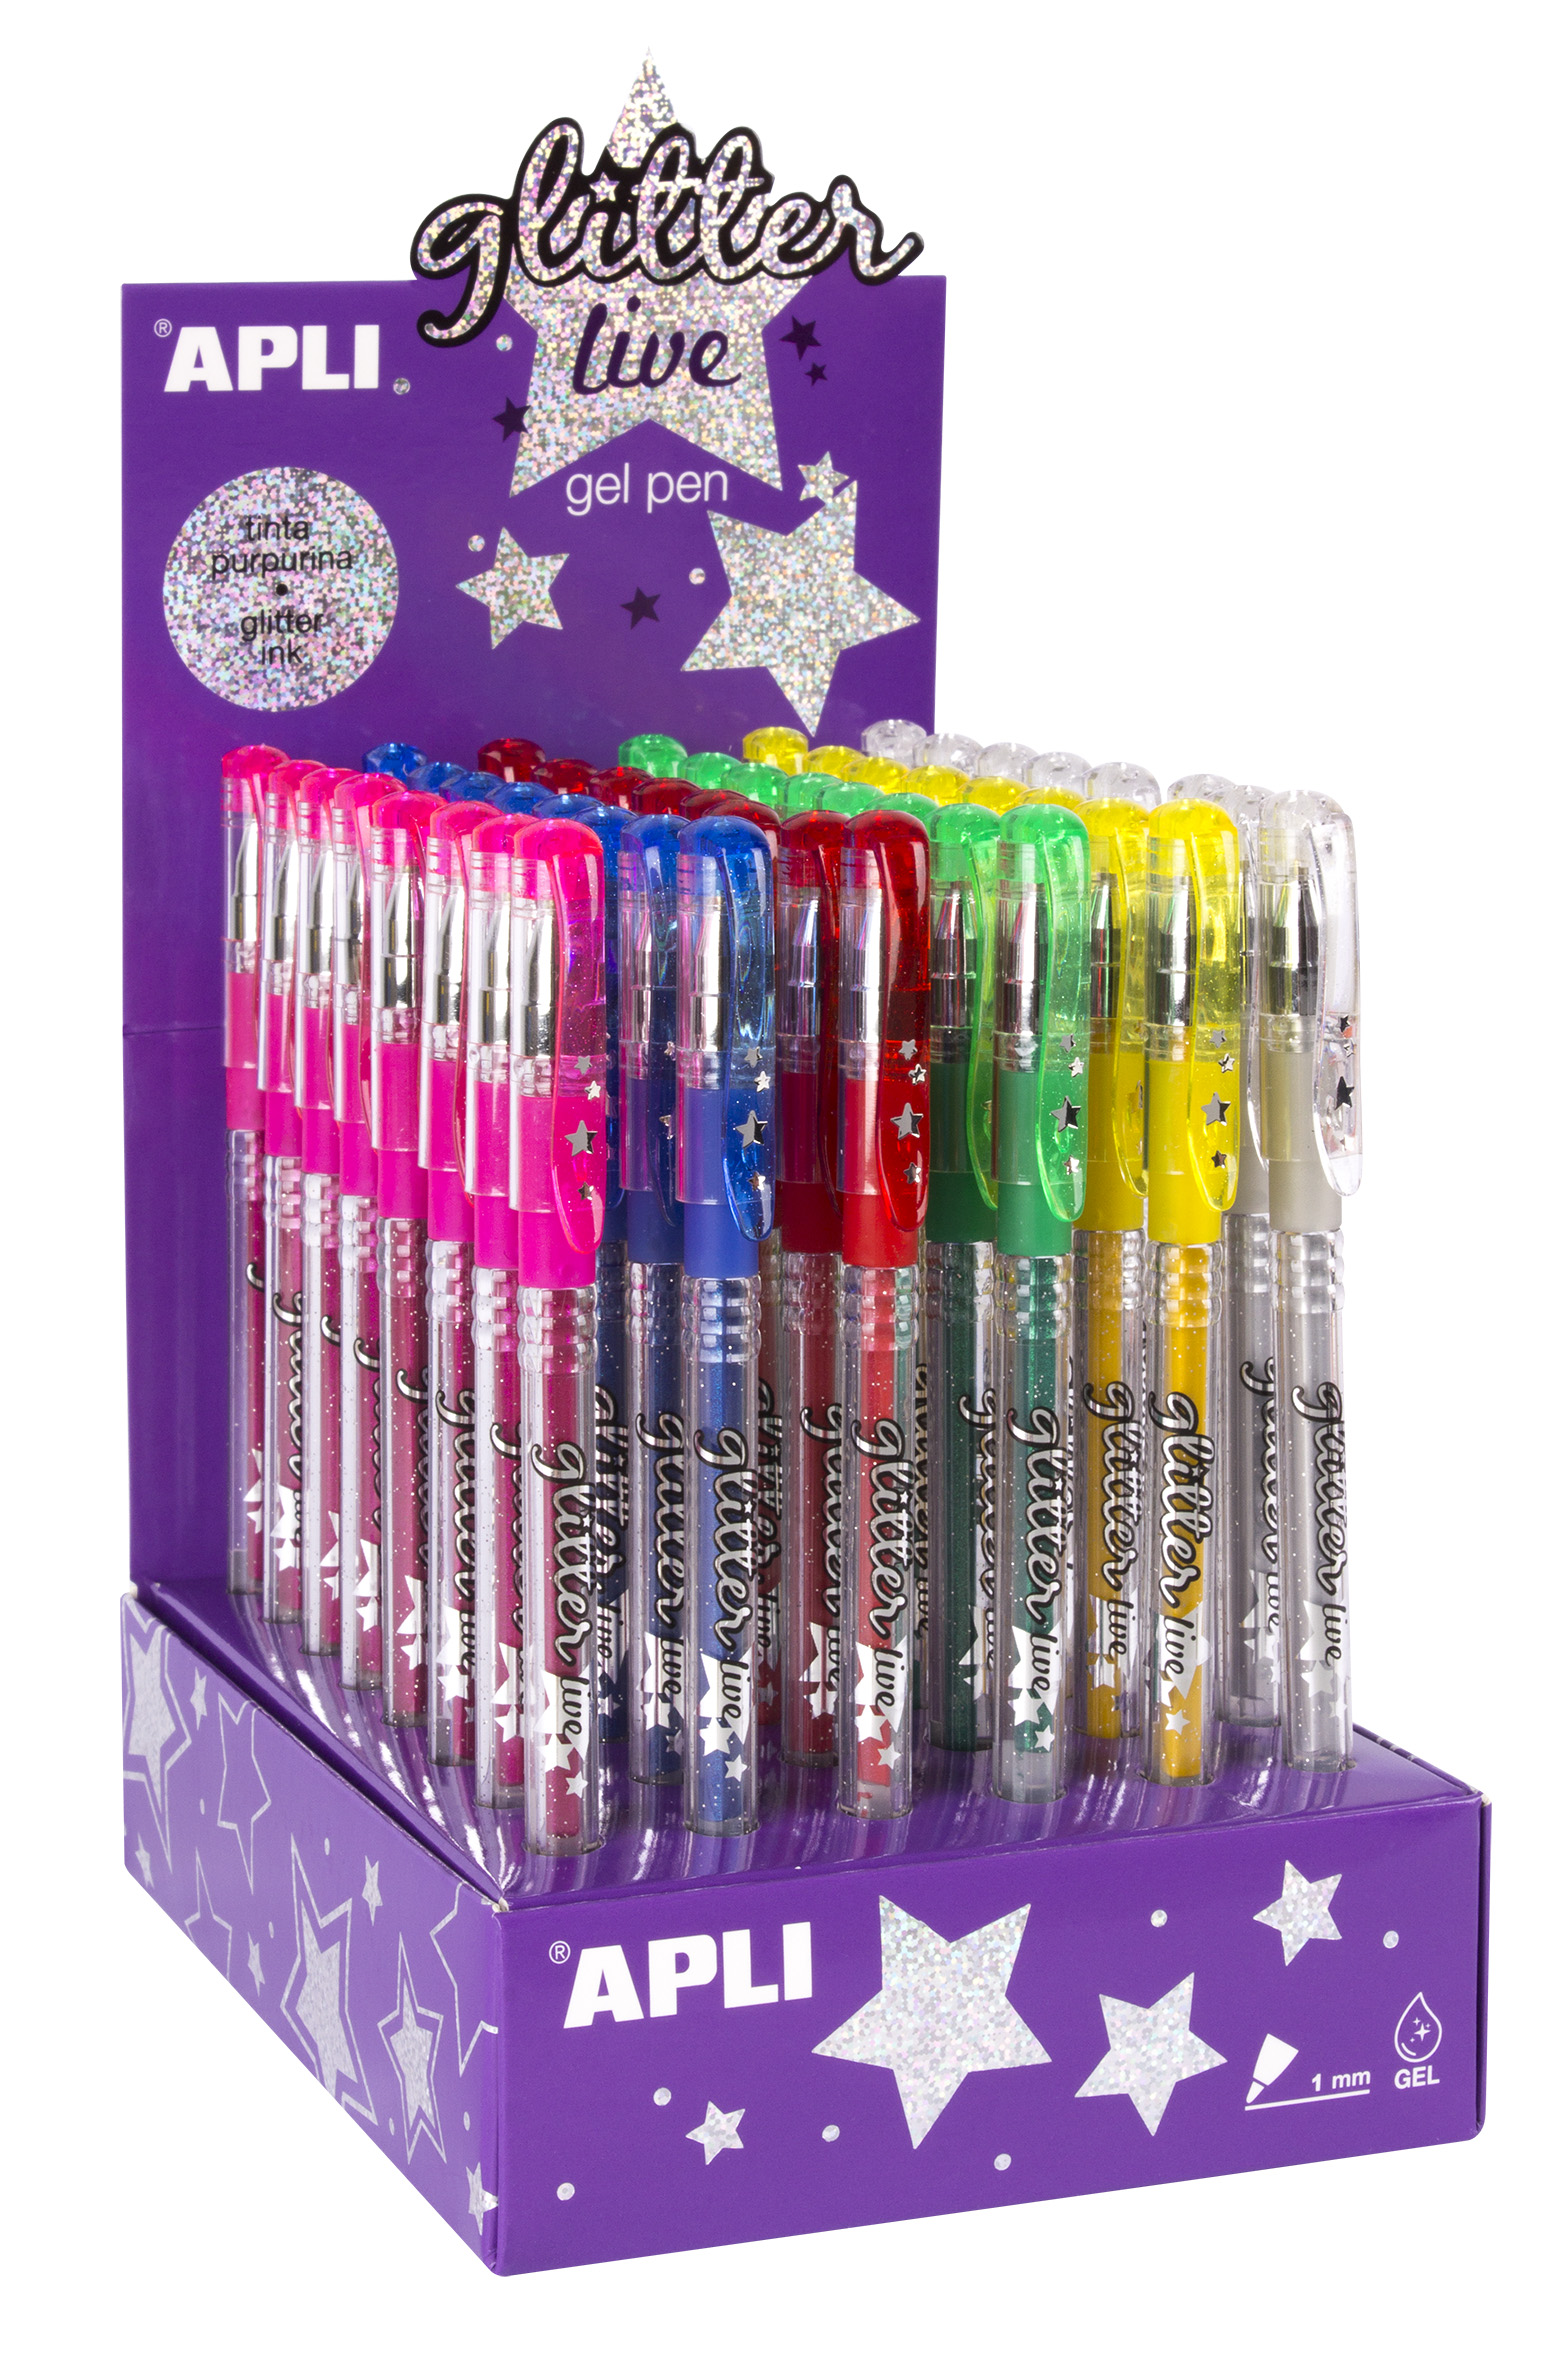 Apli Gel Pen Glitter Live - 48 Boligrafos de Tinta Gel con Purpurina - Resistentes, Secado Rapido y Larga Duracion - Grueso de Escritura de 1mm